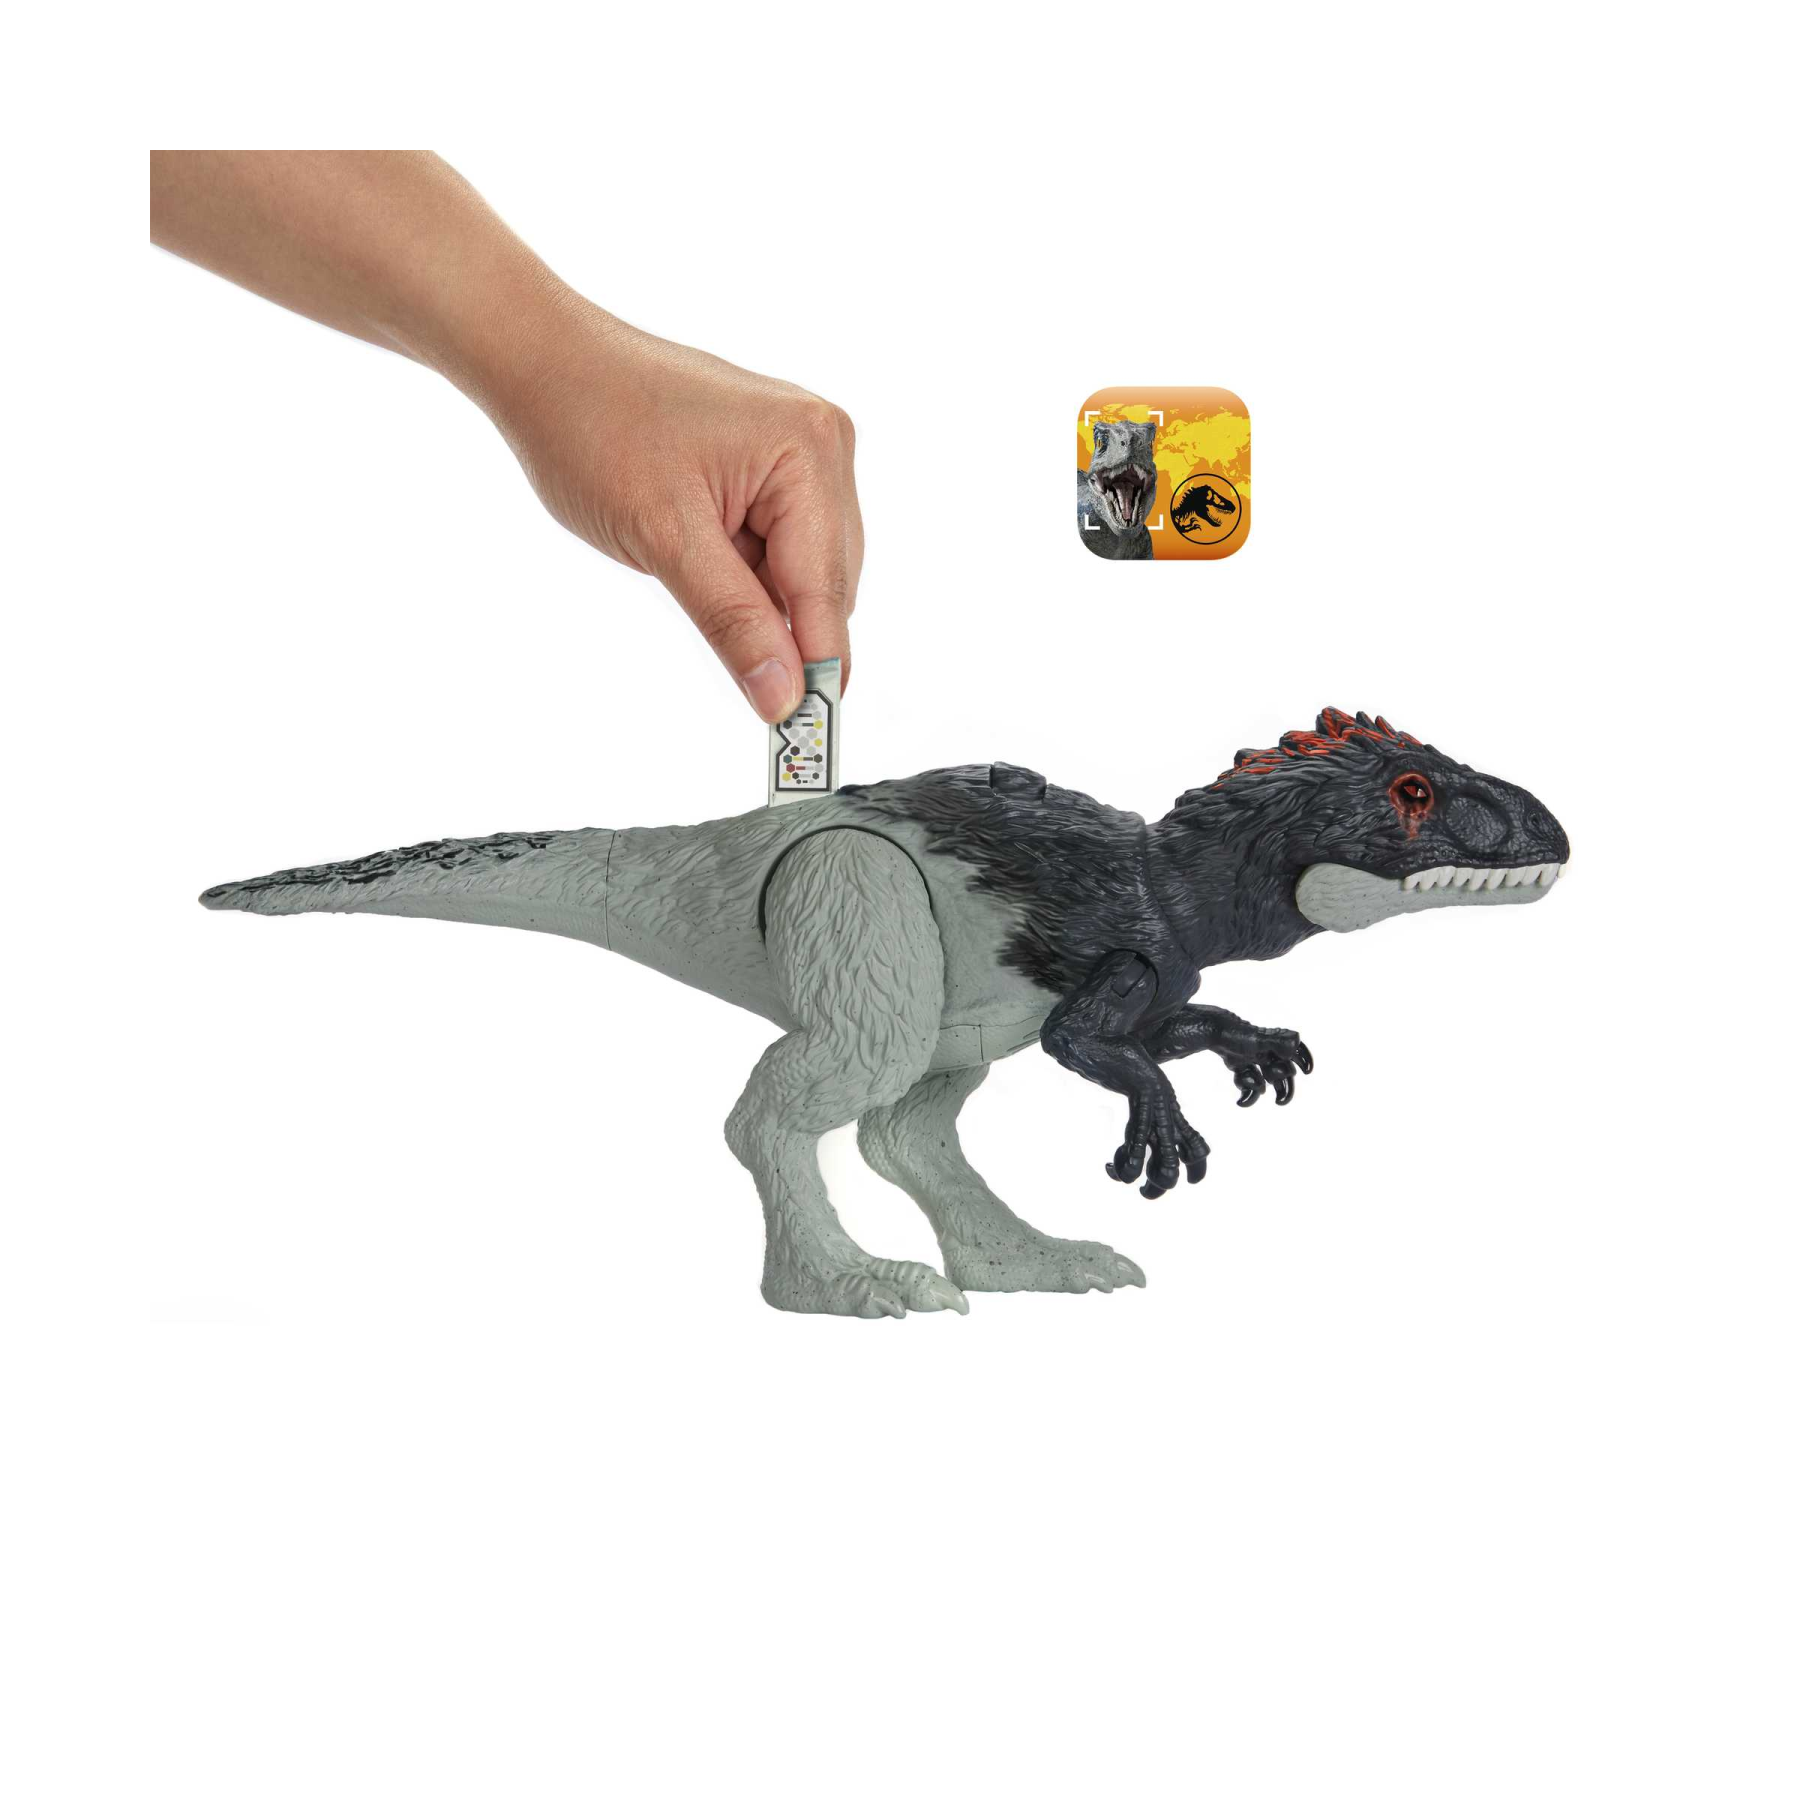 Jurassic world - ruggito selvaggio, eocarcaria, con suoni e mossa d'attacco, dimensioni medie, snodato e con gioco digitale, giocattolo per bambini, 4+ anni, hlp17 - Jurassic World